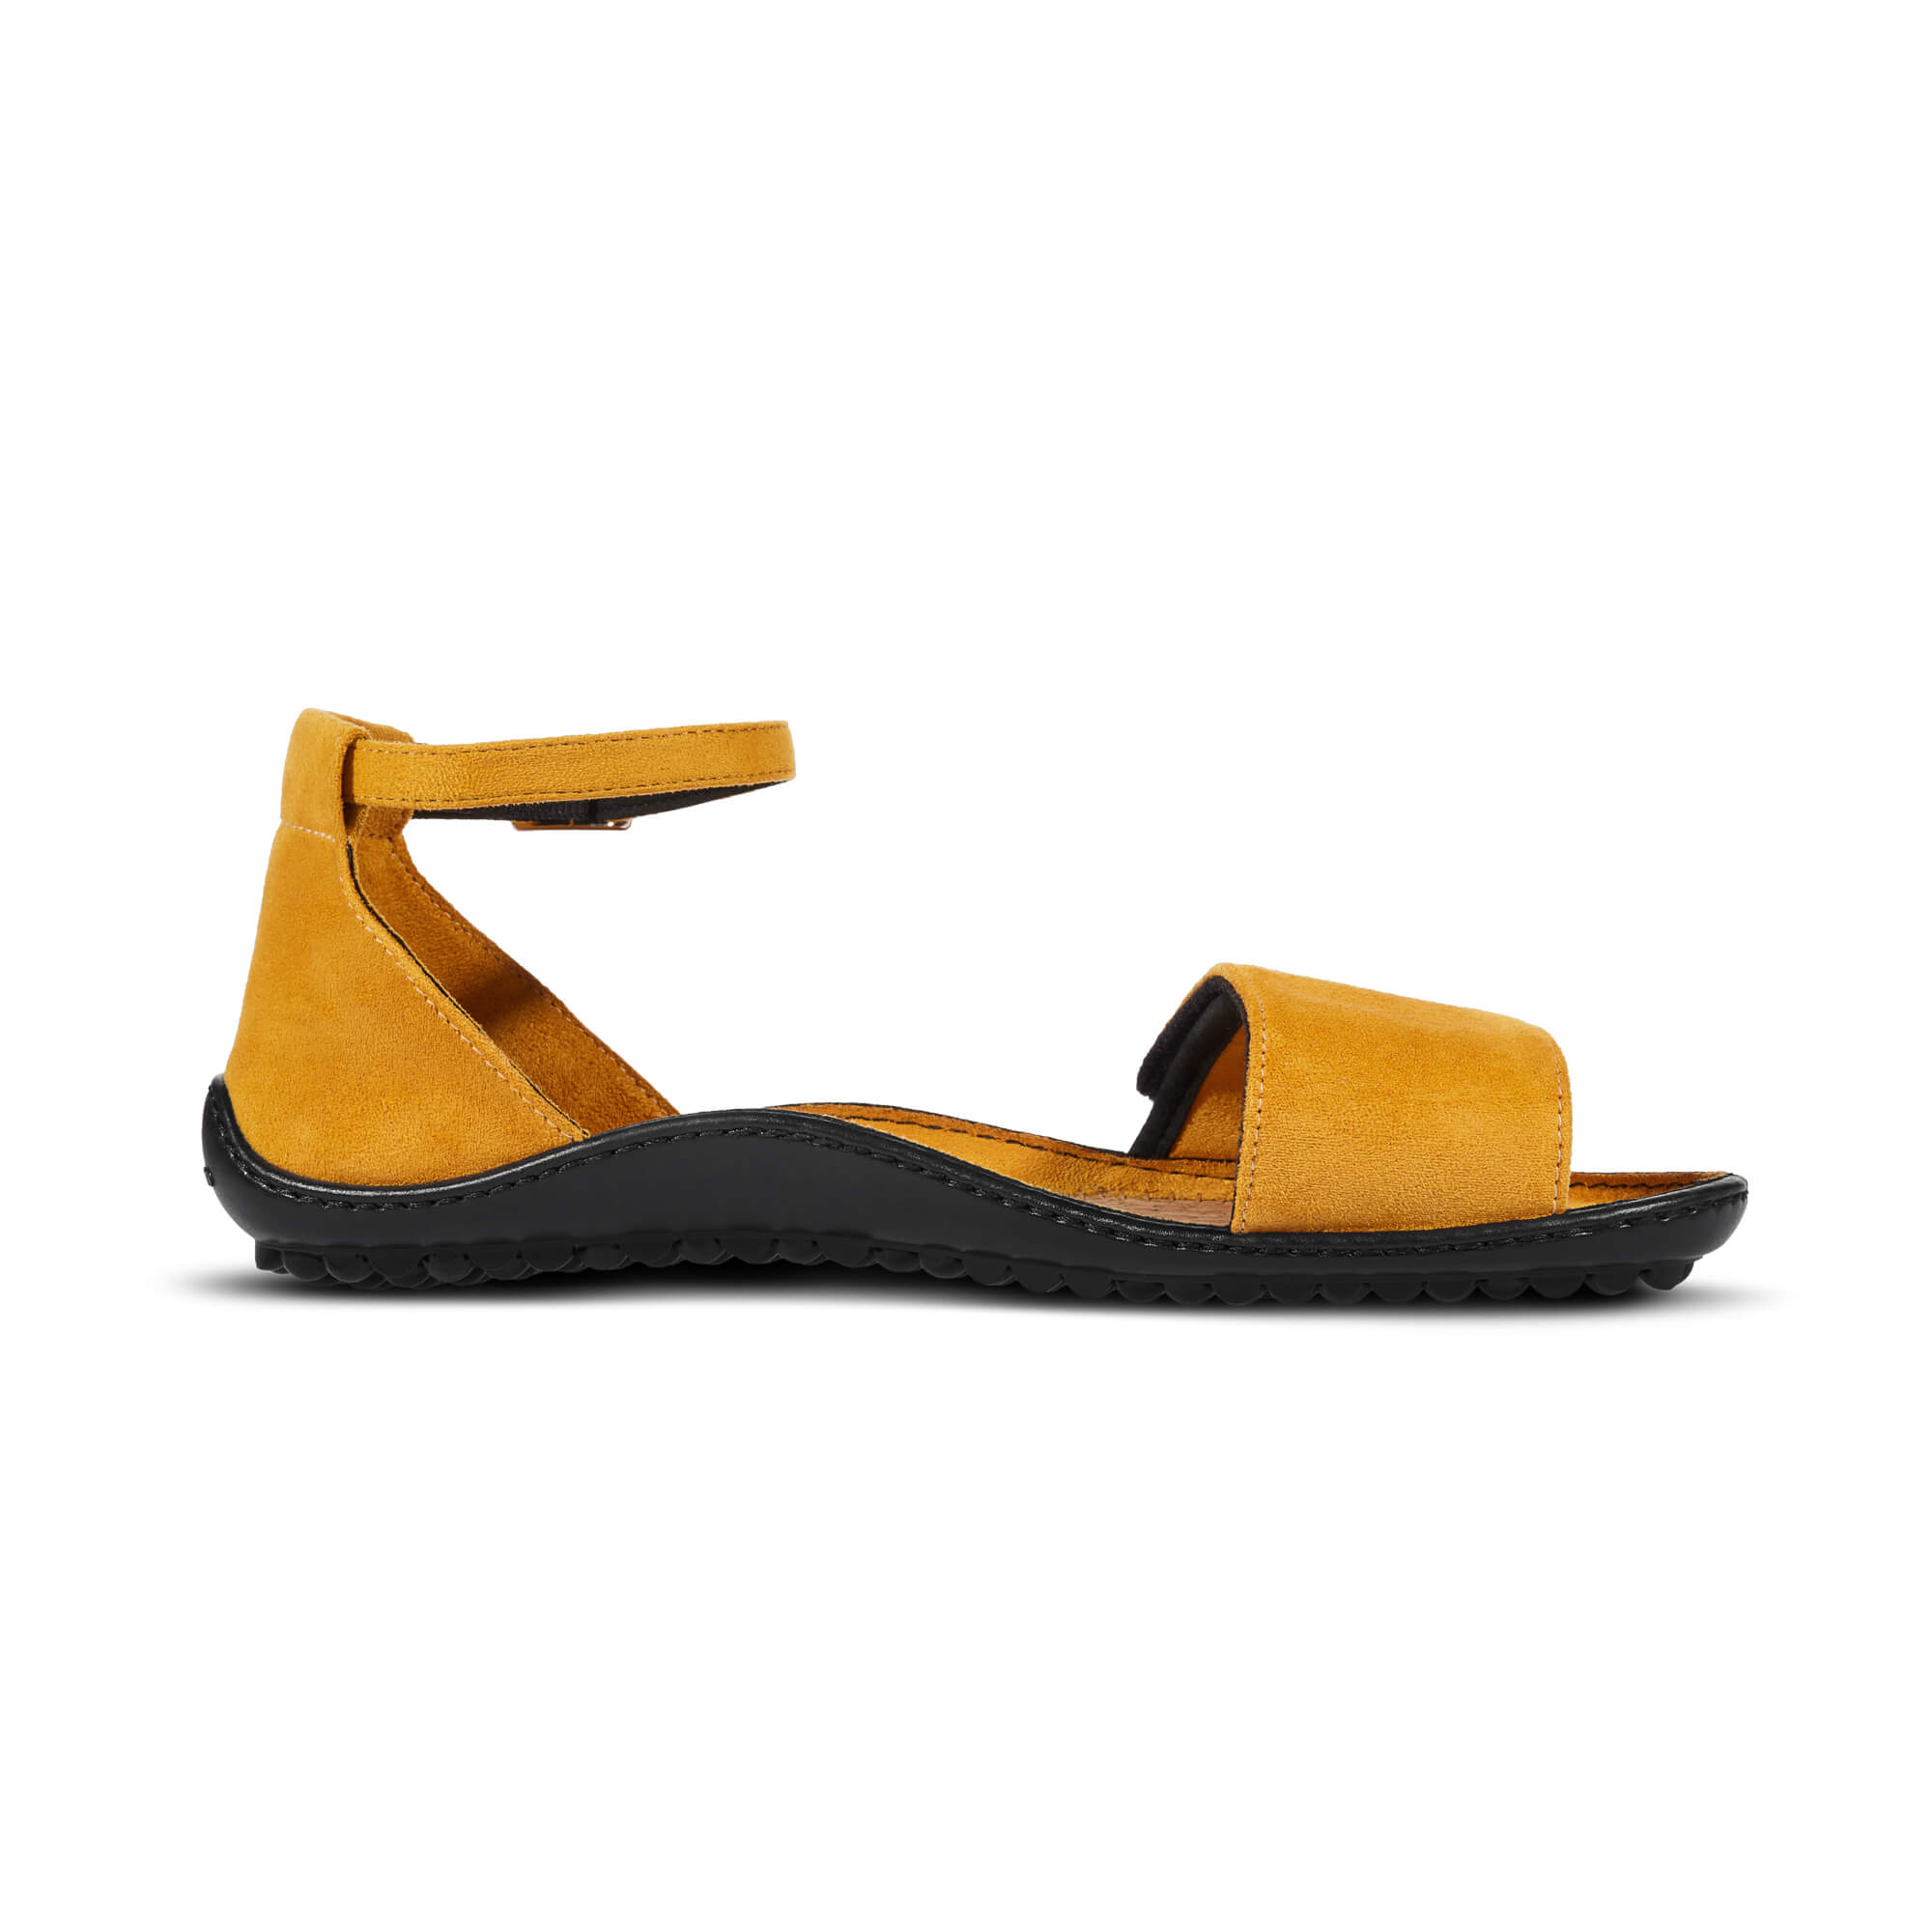 Leguano Jara barfods sandaler til kvinder i farven yellow, inderside